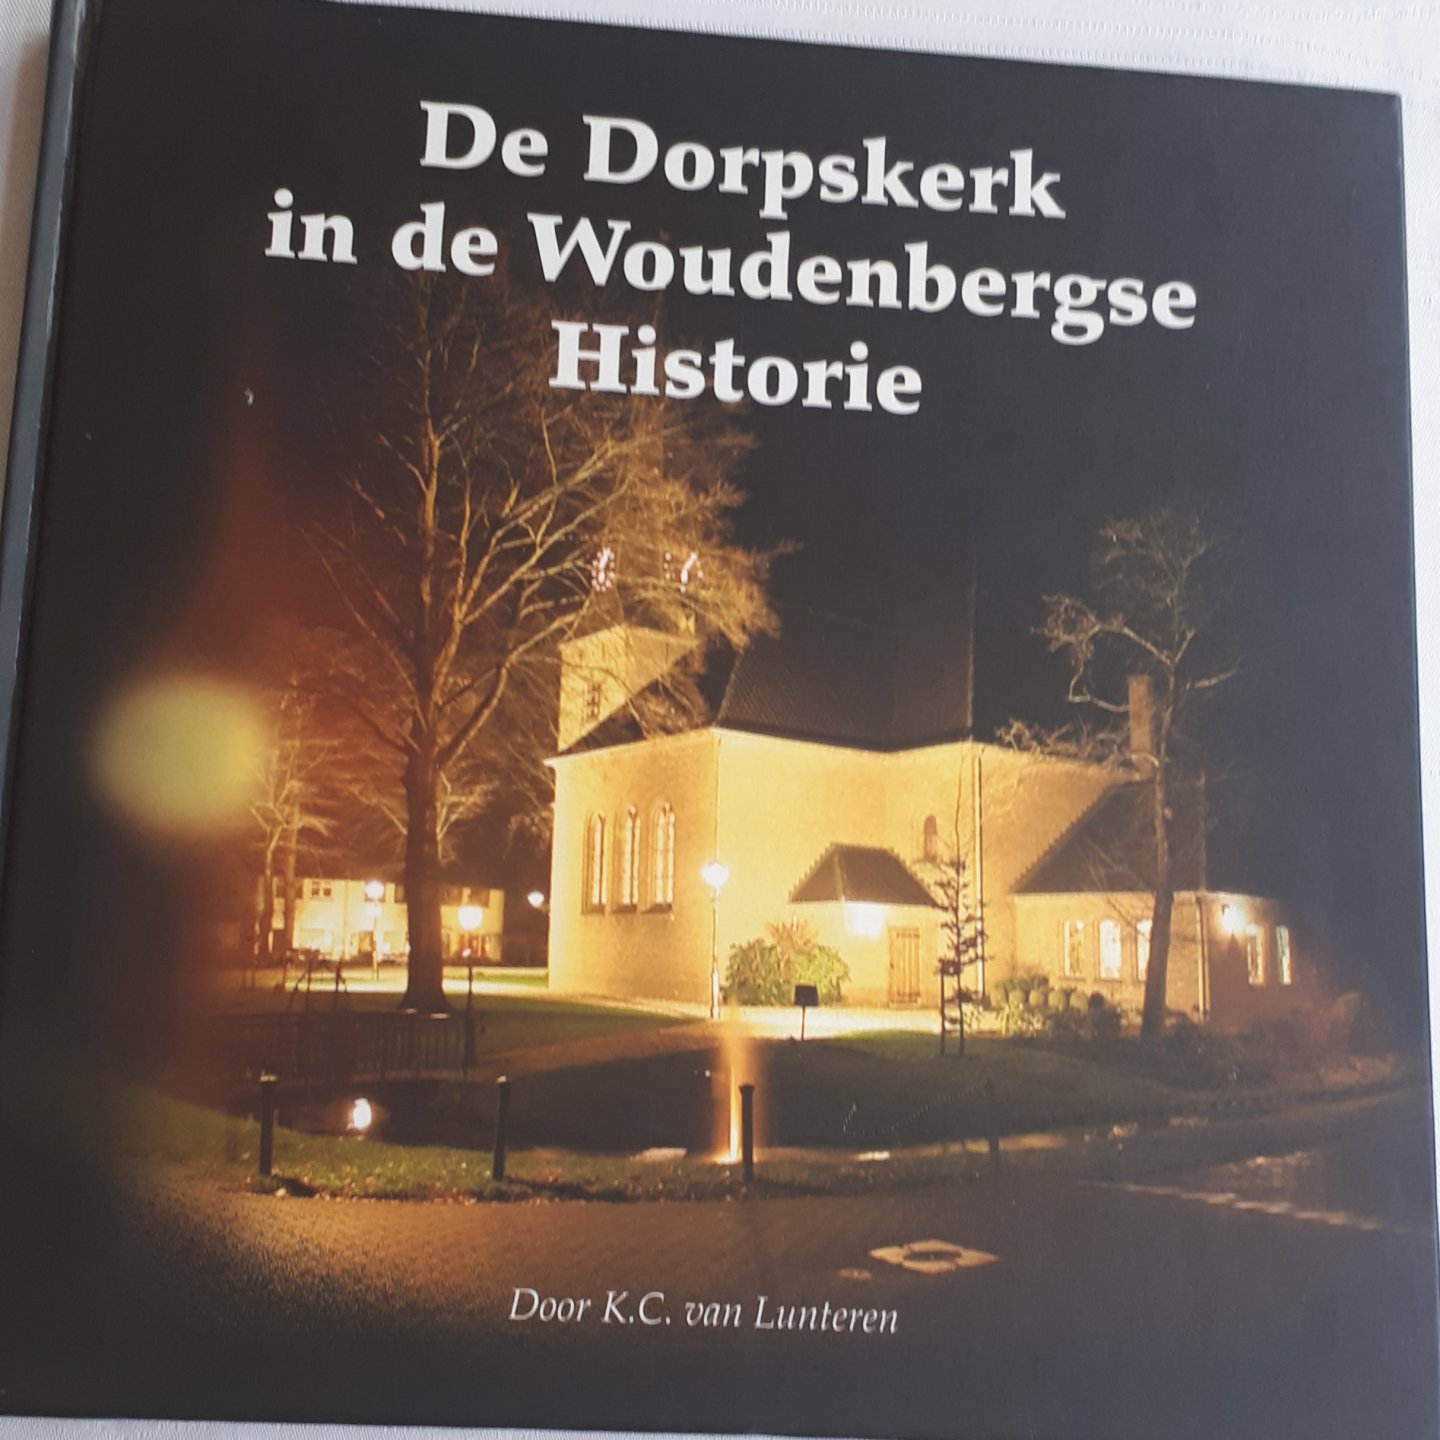 LUNTEREN, K. C. van - De Dorpskerk in de Woudenbergse historie